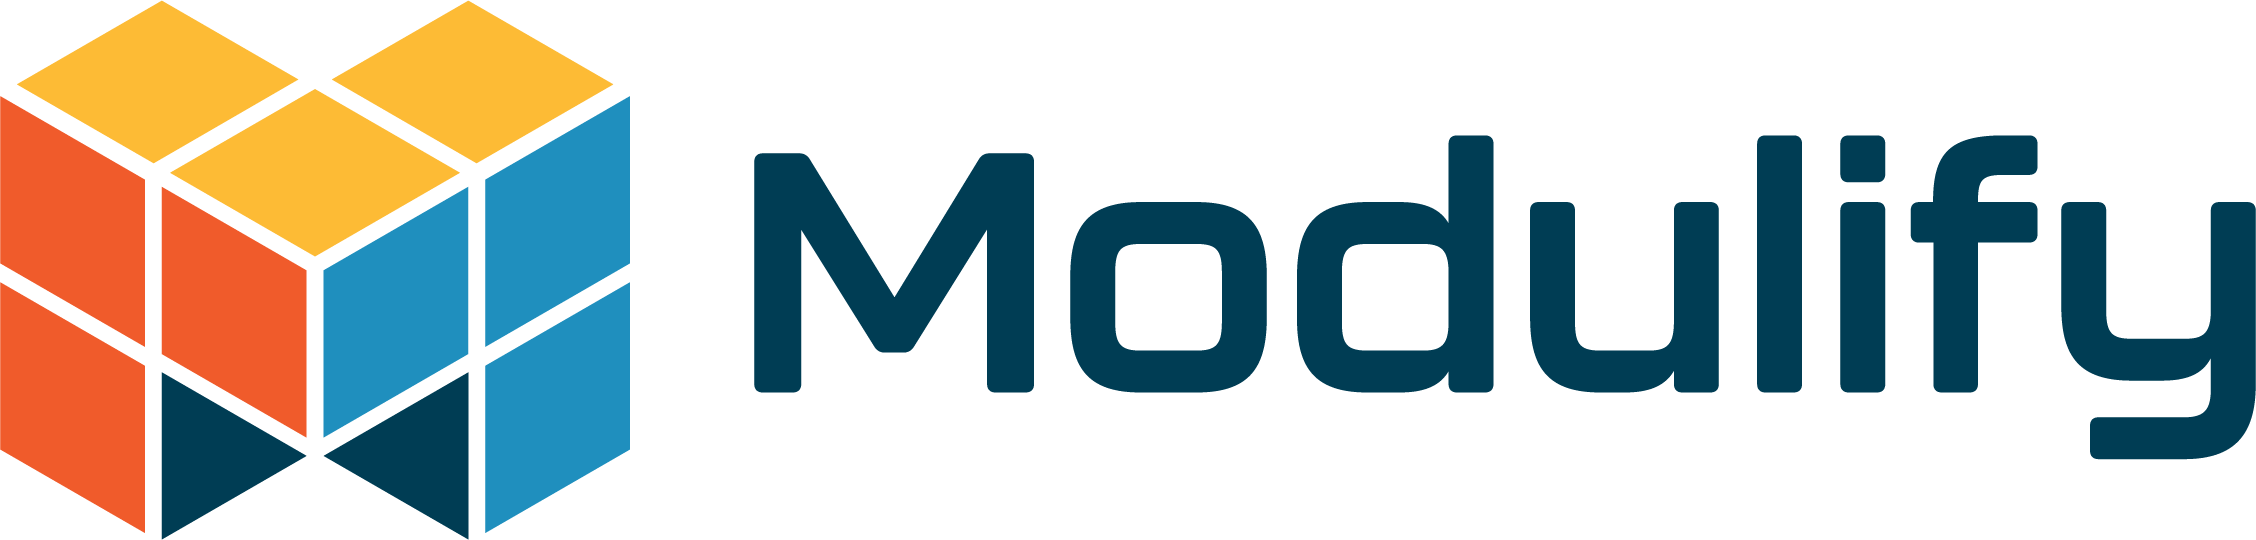 Modulify logo